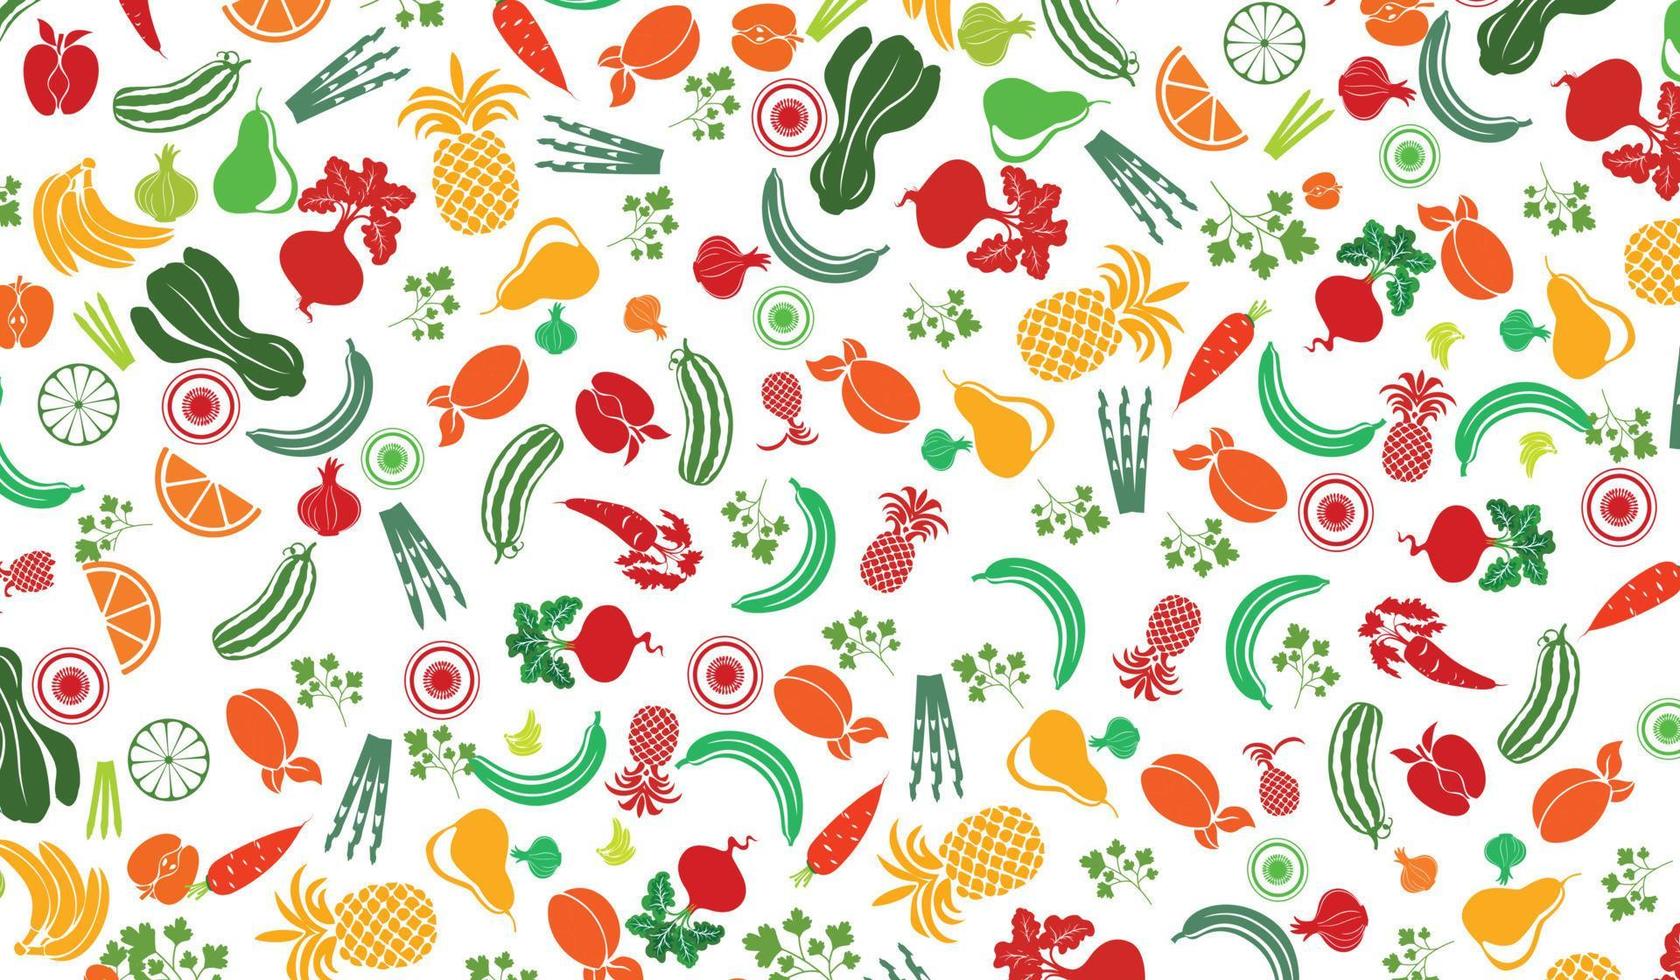 padrão de diferentes tipos de frutas em um estilo plano em um fundo branco vetor